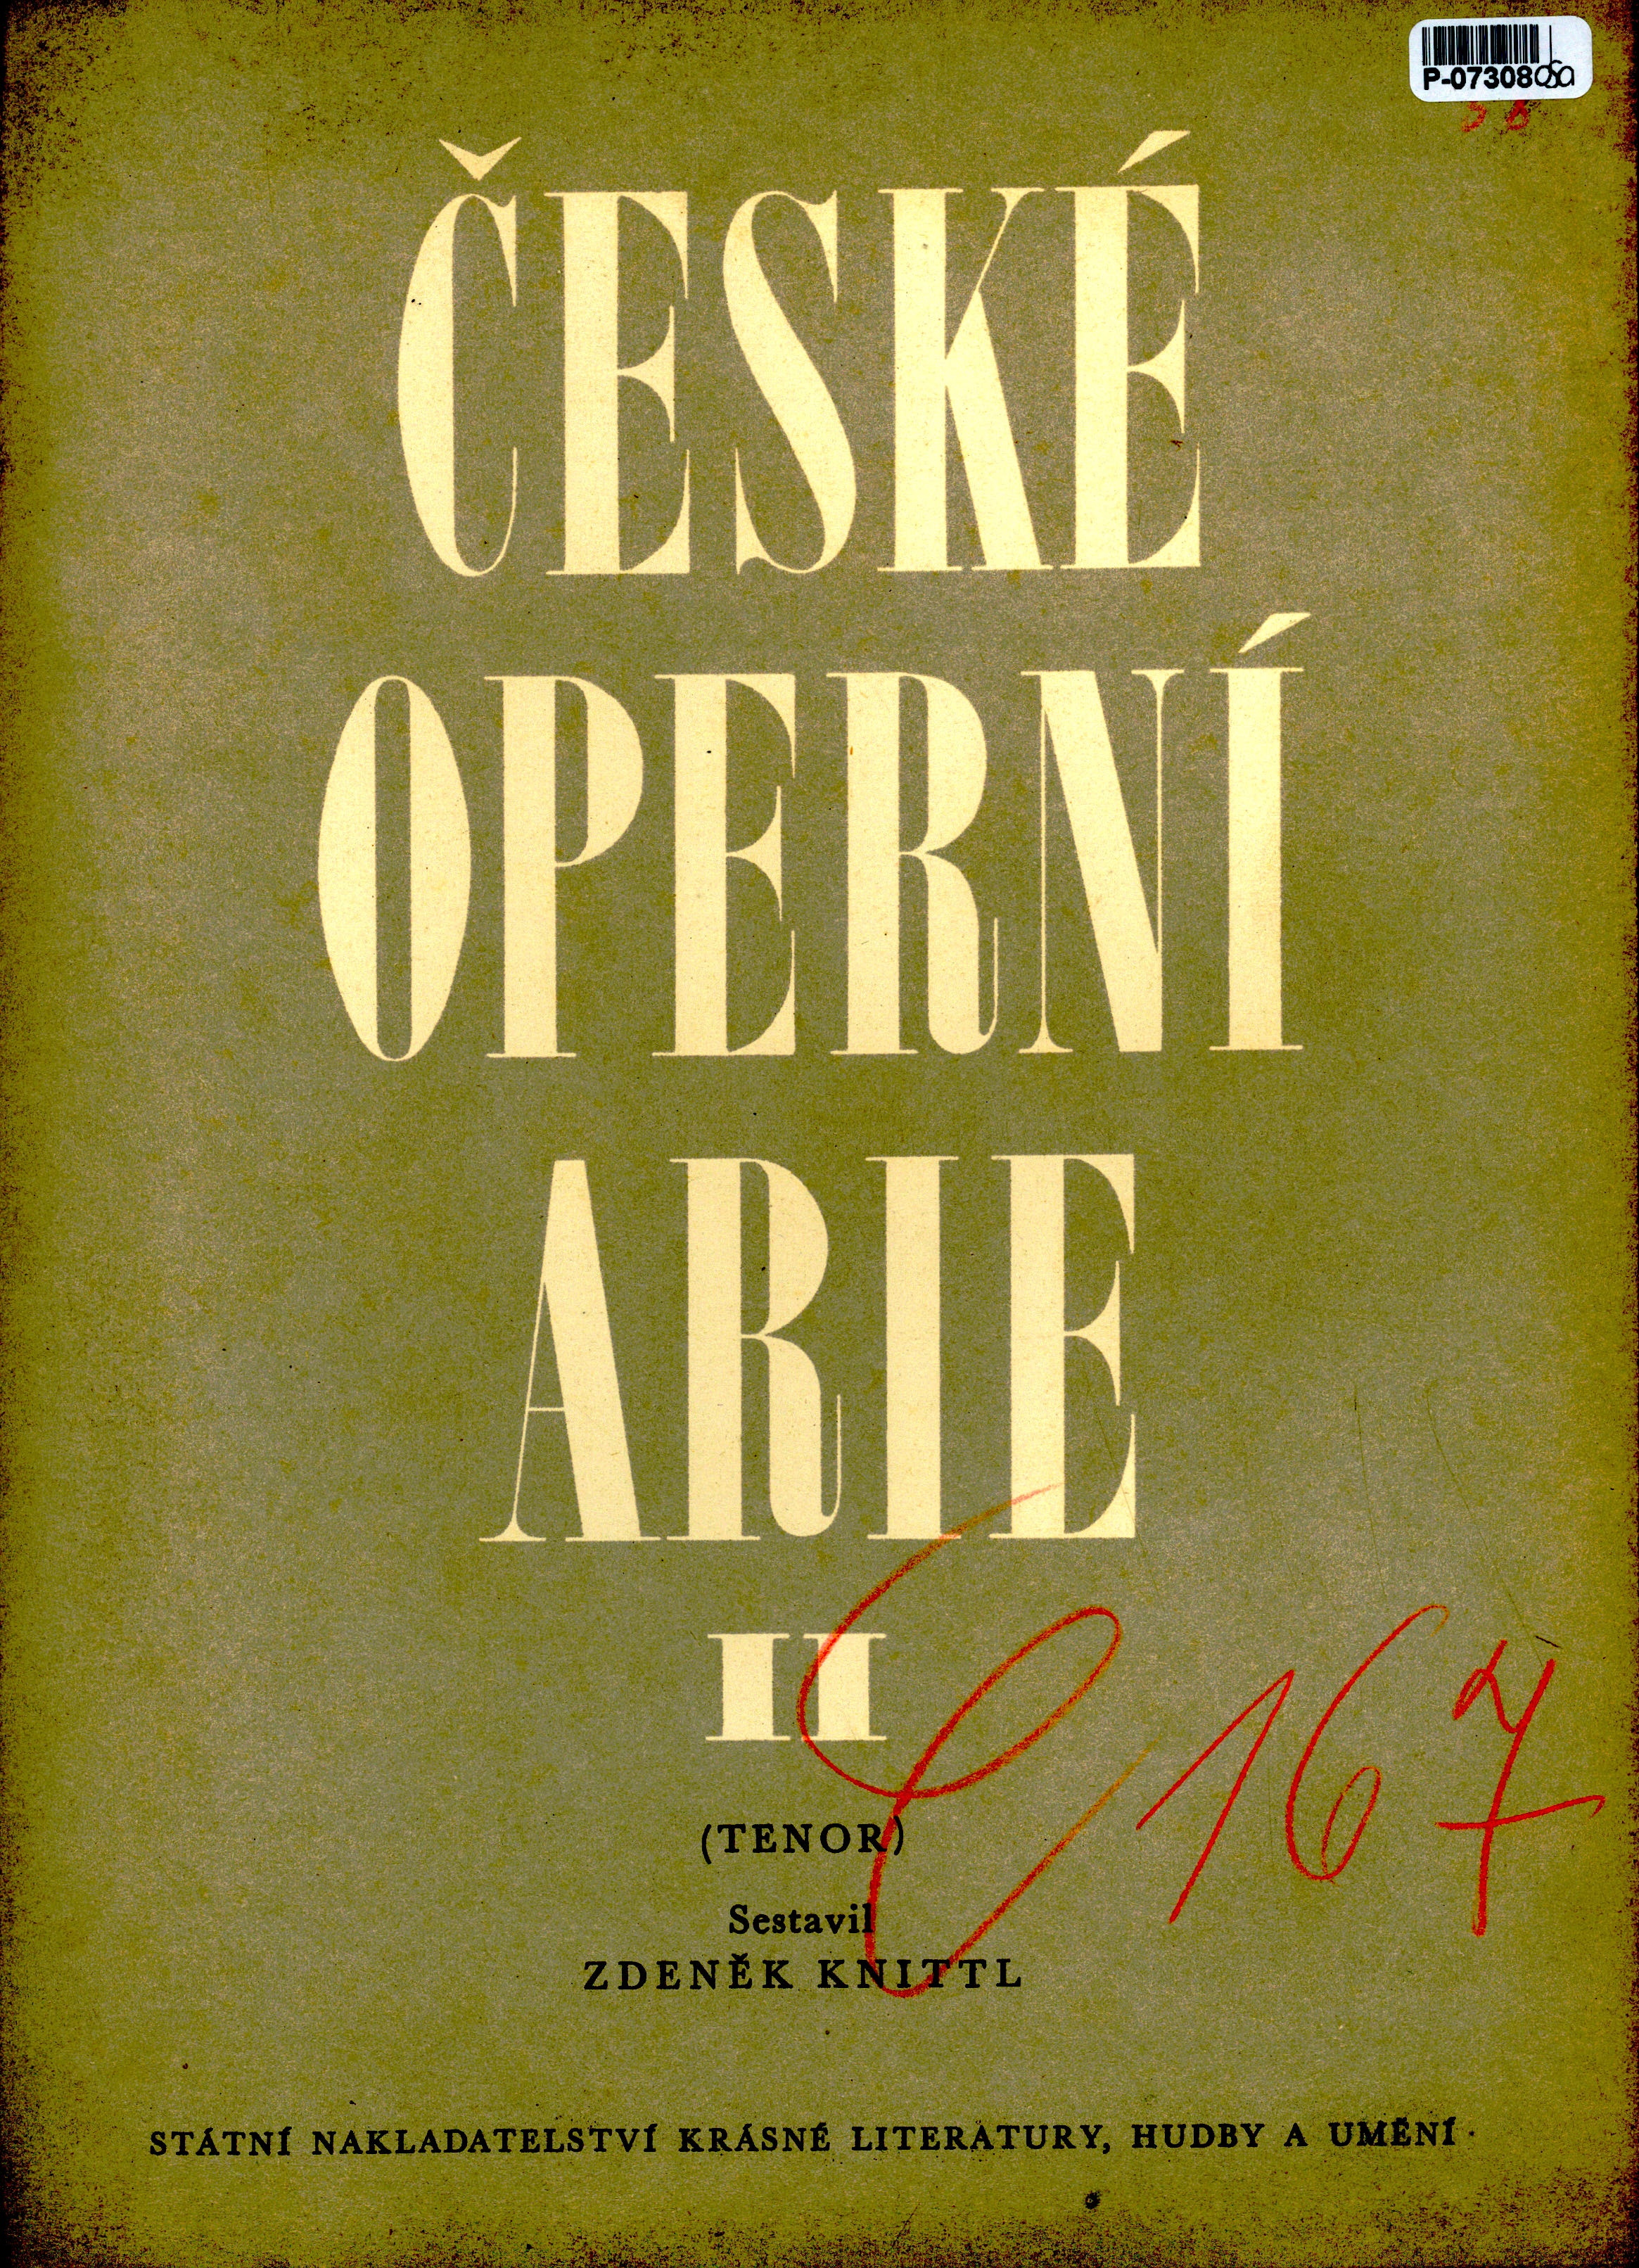 České operní arie II.